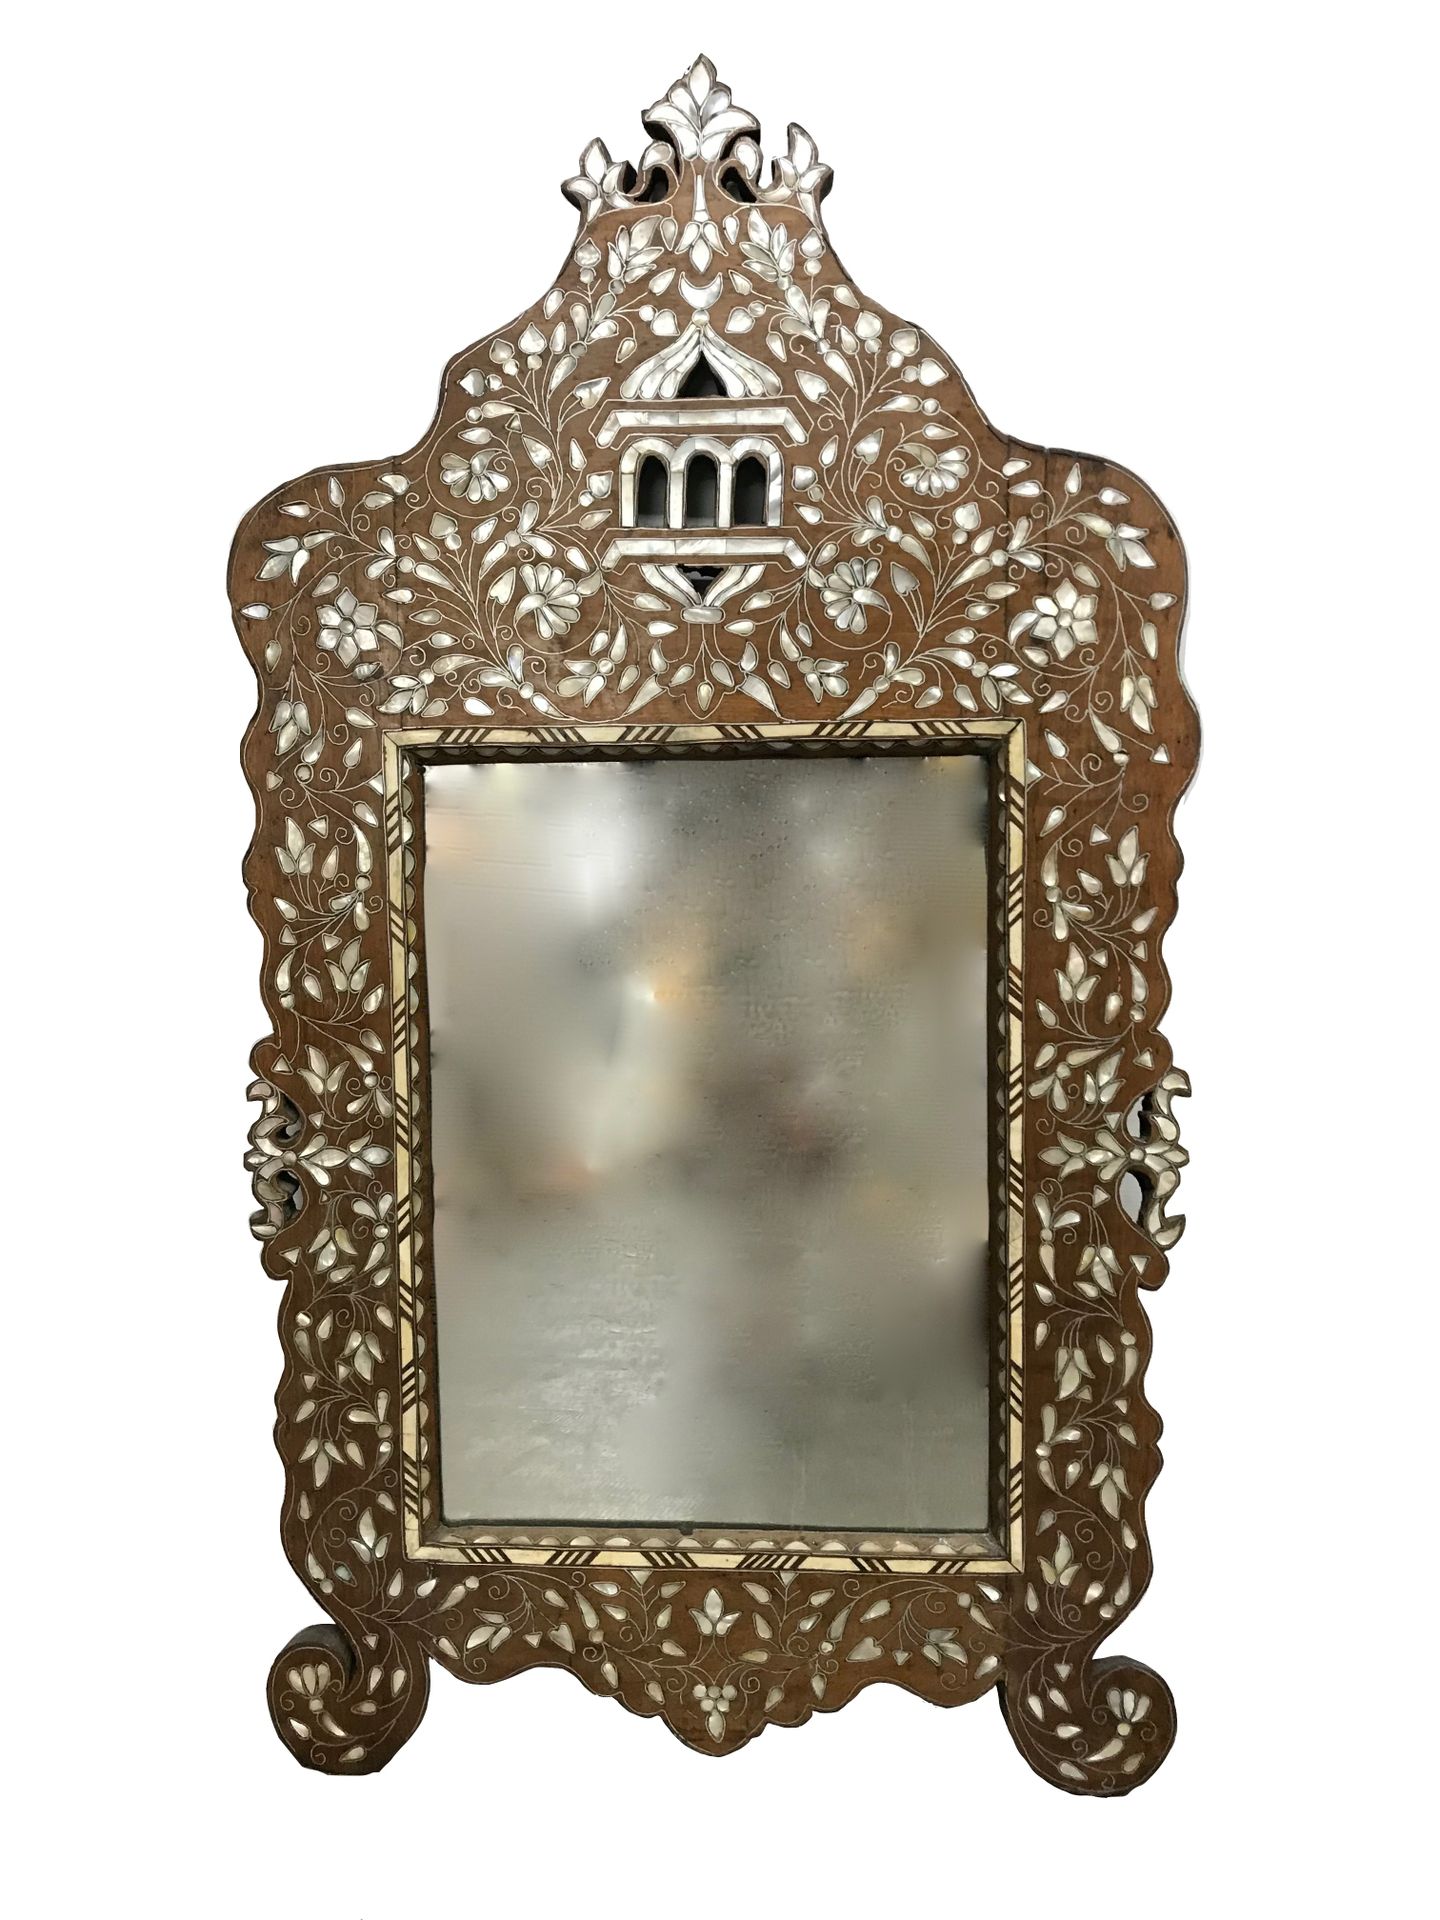 IRAN 嵌有珍珠母的镜子

H.114厘米 - 宽62厘米